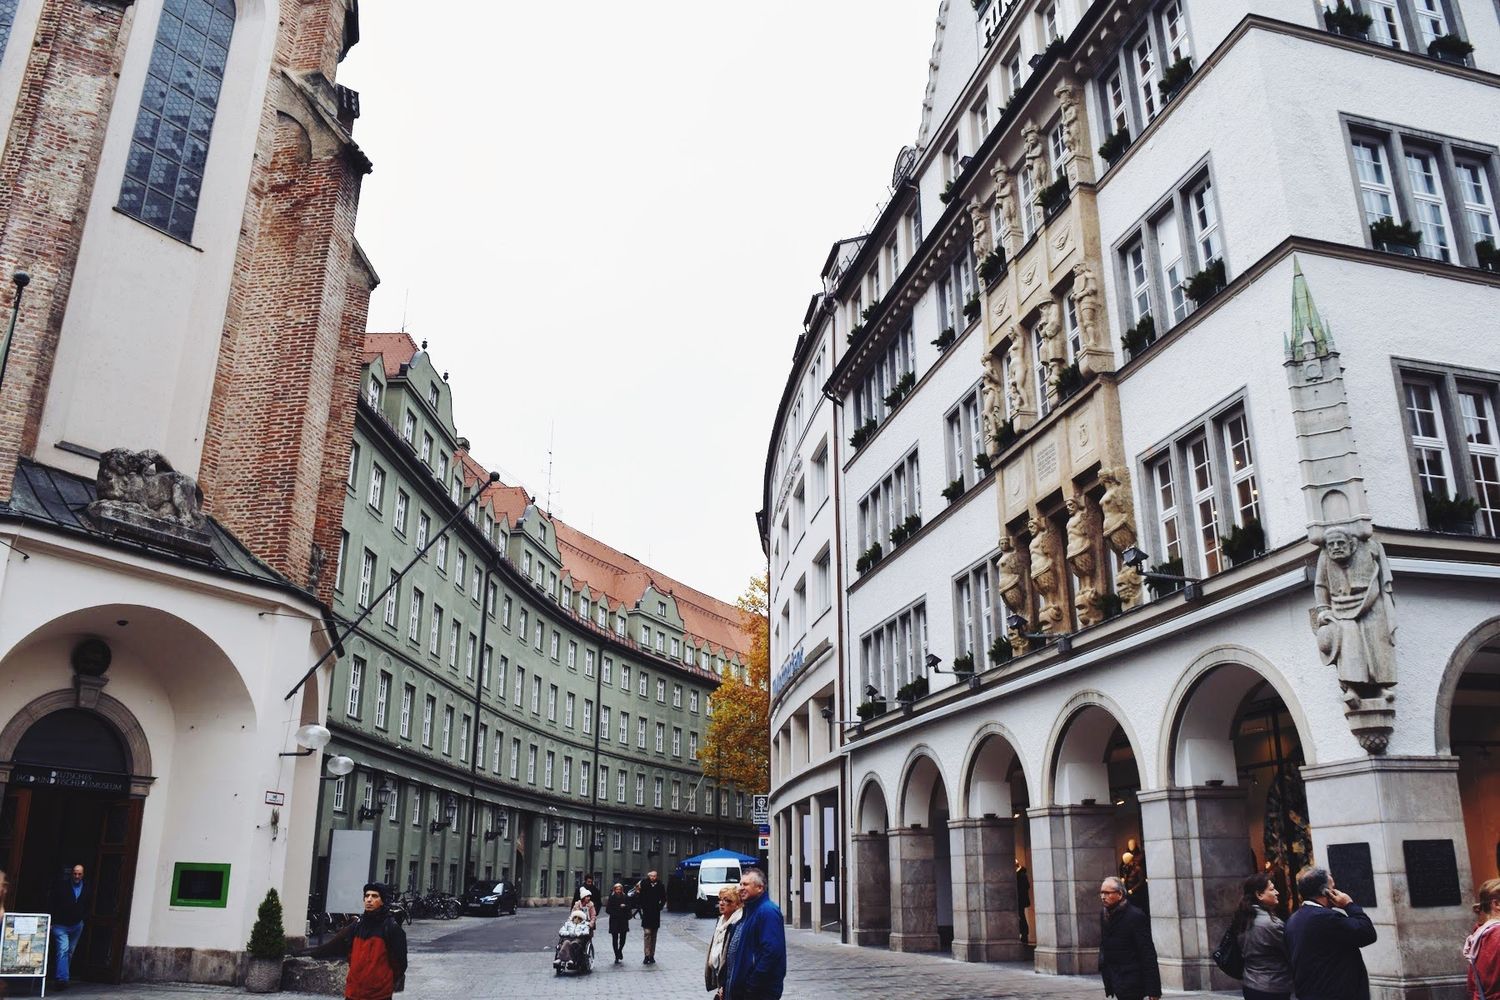 Exploring Altstadt, Munich